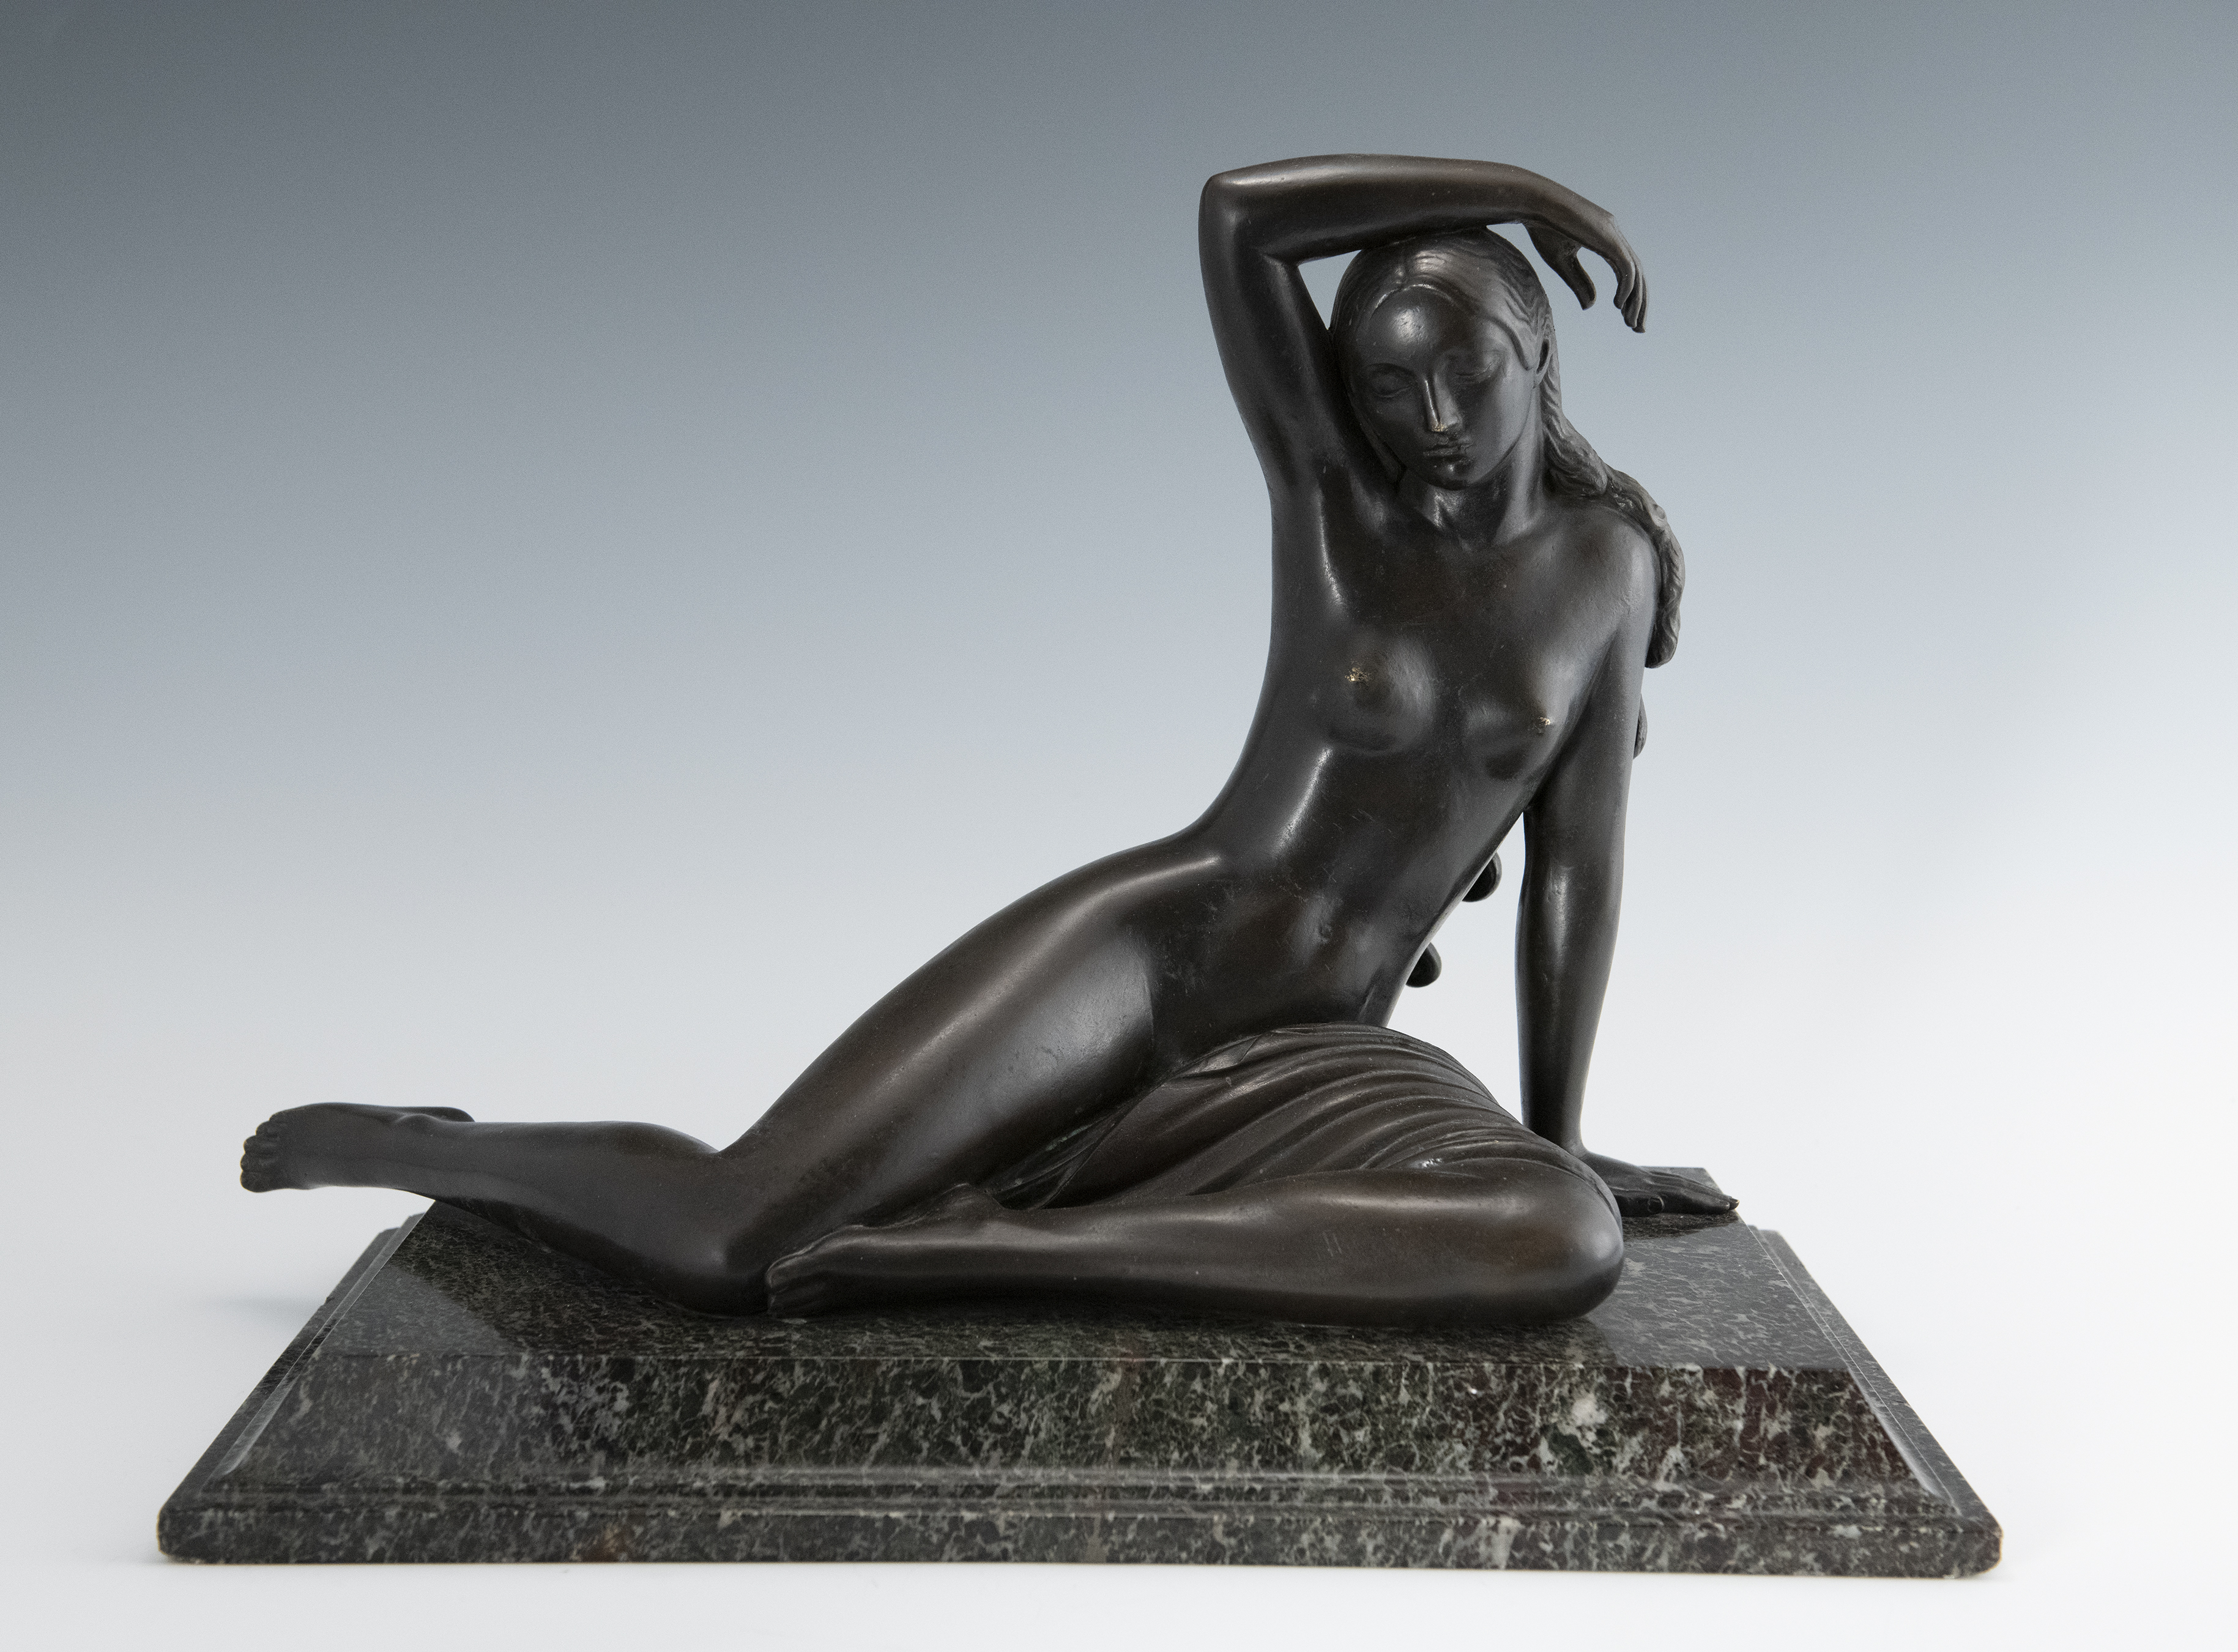 ‘Danae,’ 1920, bronze. Paul Manship, American, 1885-1966. 11 3/4 by 17 1/4 by 7 1/8in. Joslyn Art Museum, Omaha, Nebraska, gift of Mrs. Arthur O’Brien, 1947.295